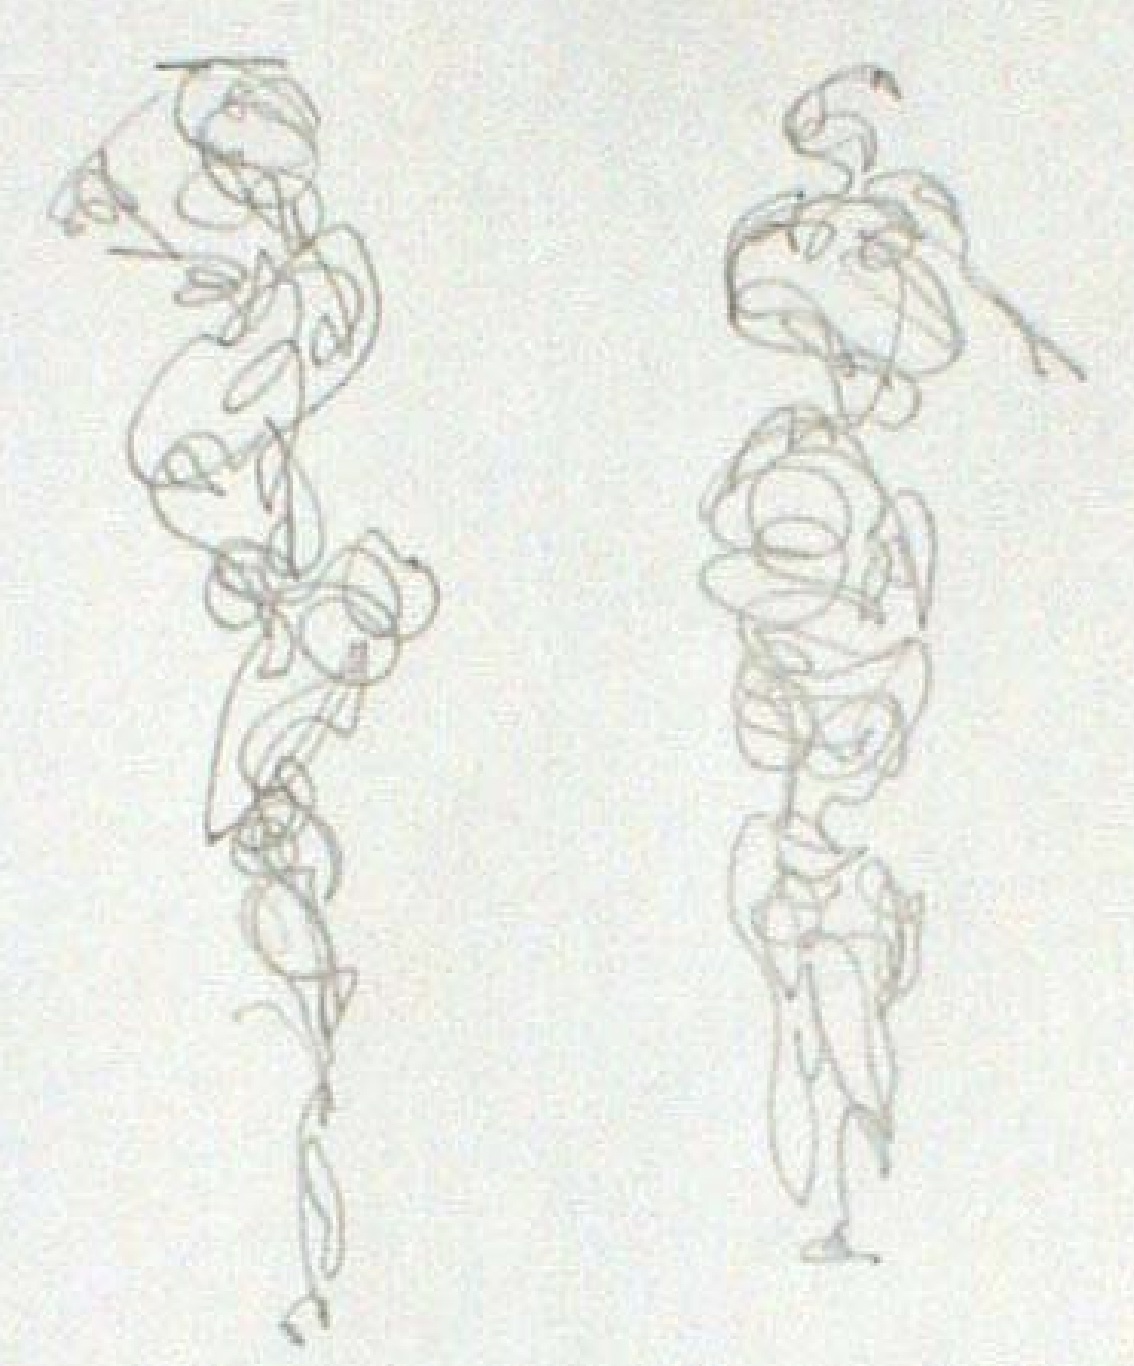 scribble line gesture drawing